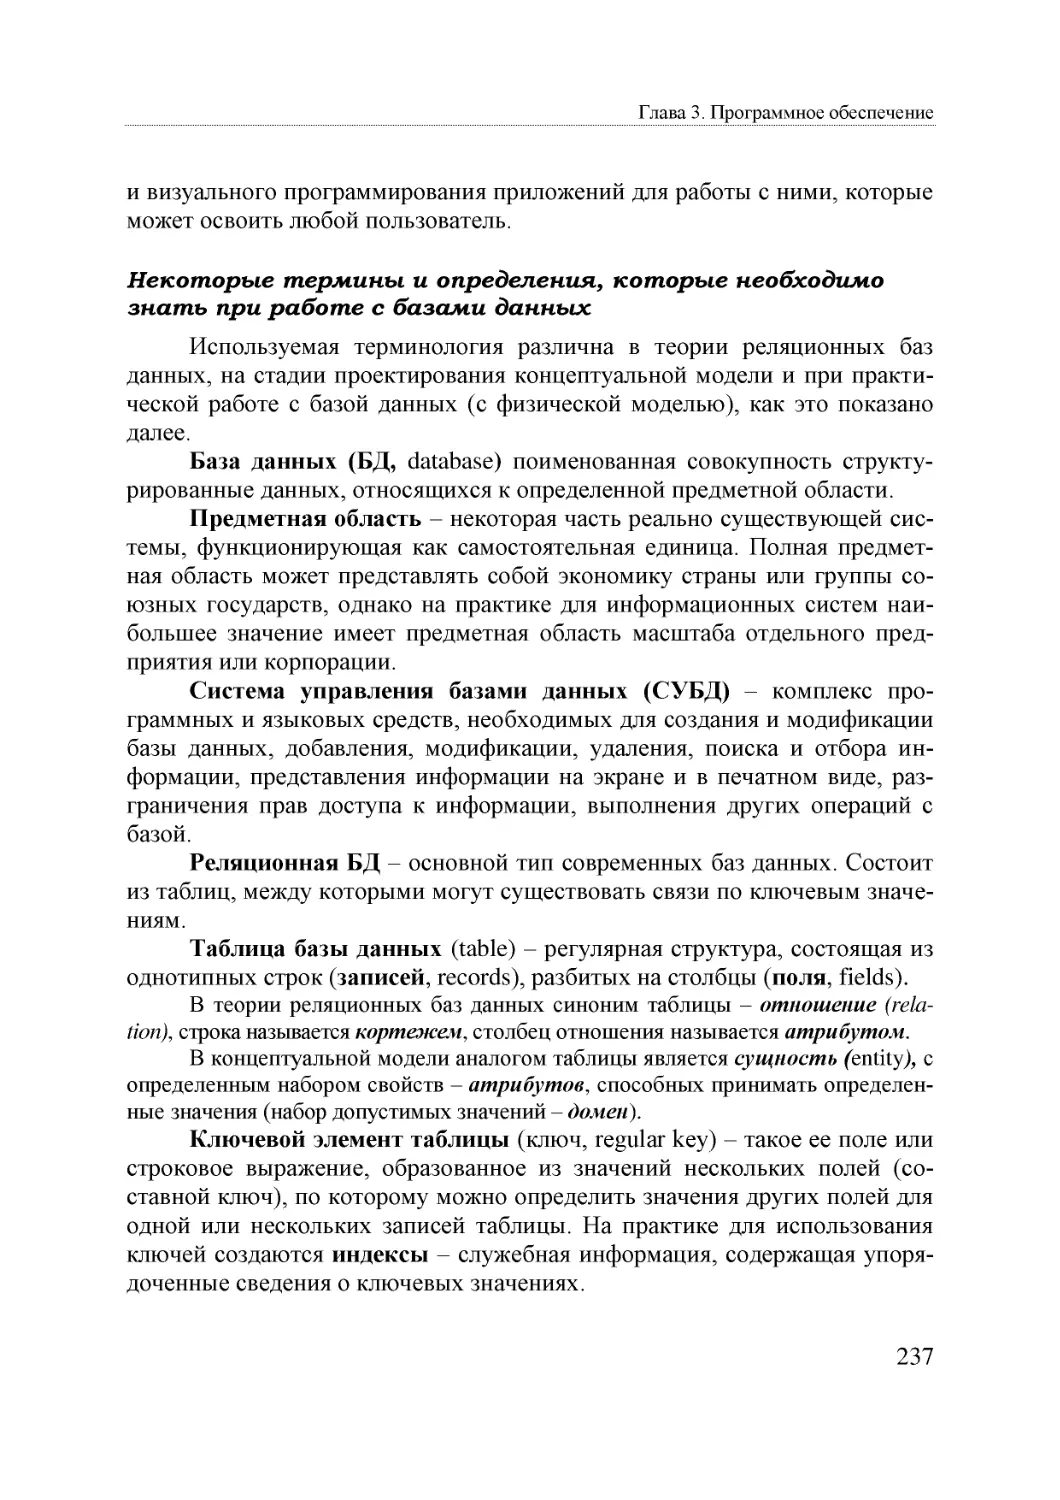 Informatika_Uchebnik_dlya_vuzov_2010 237